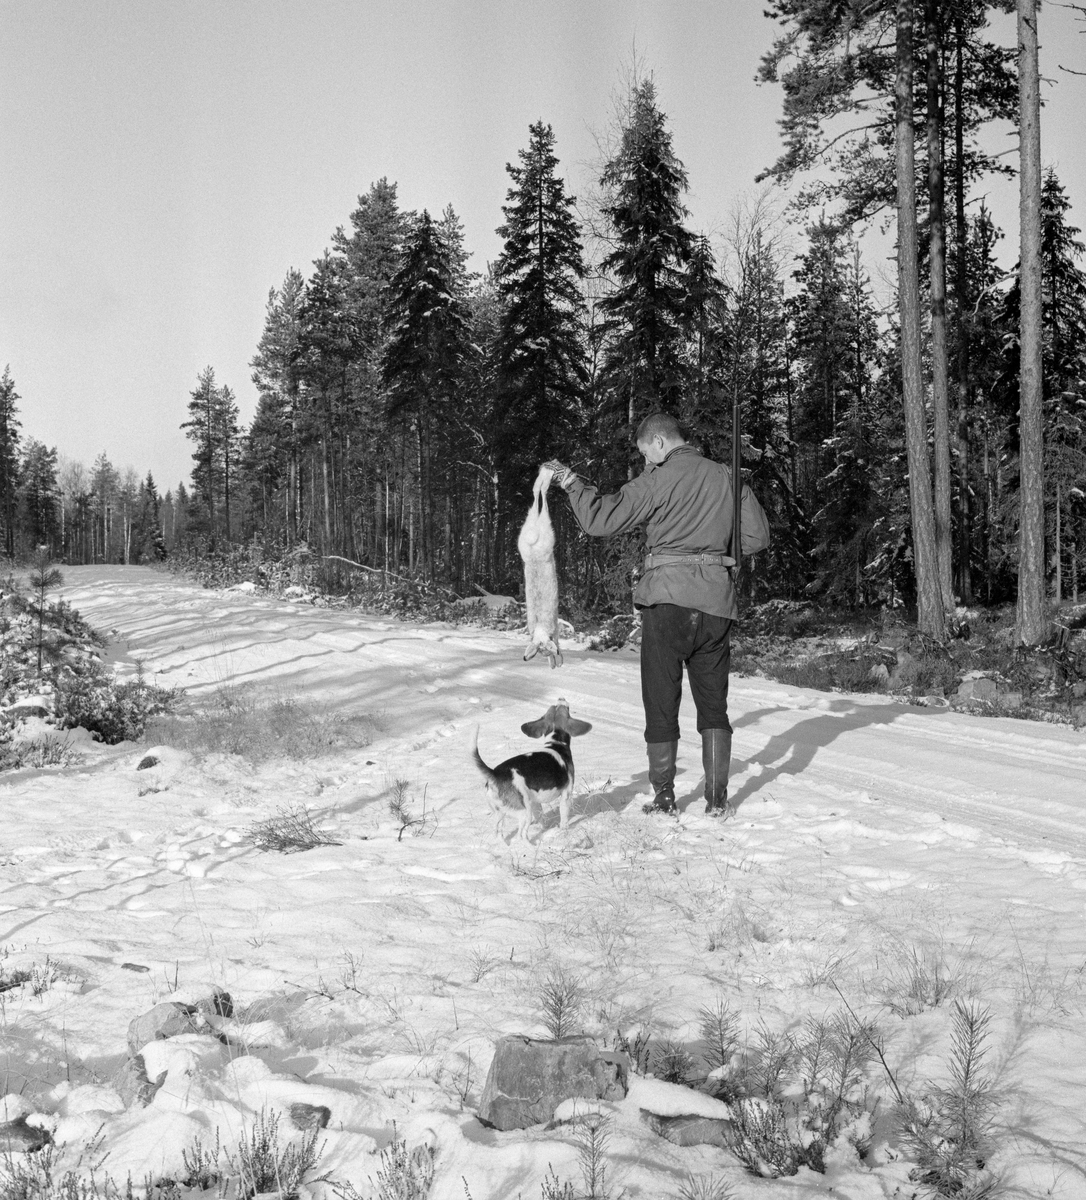 Jeger med harehund fotografert med en hare som nettopp er skutt under harejakt. Elverum, Hedmark.